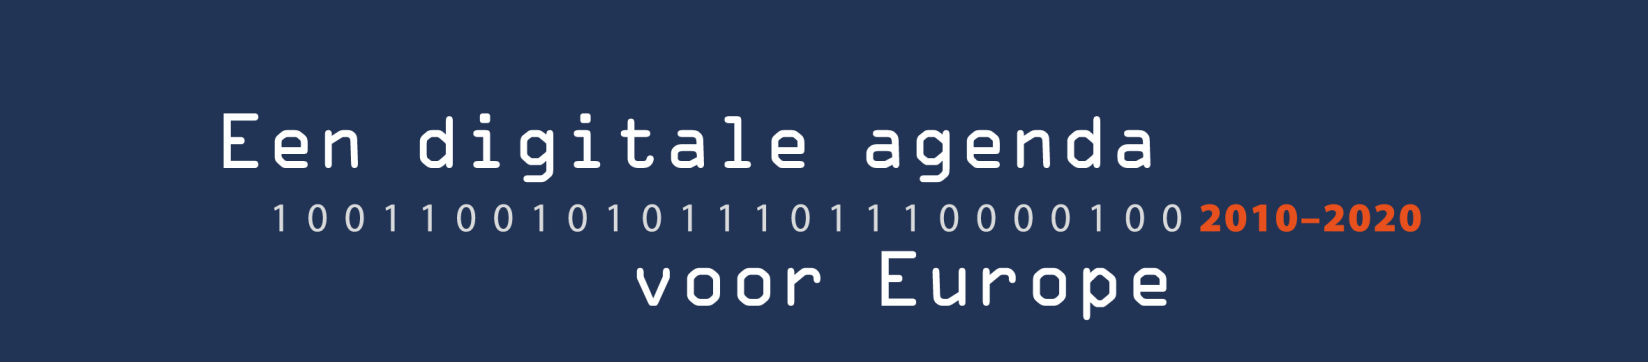 Workshop 3 Digitale inclusie Rondetafel De Digitale Agenda voor Europa Brussel, 11.10.